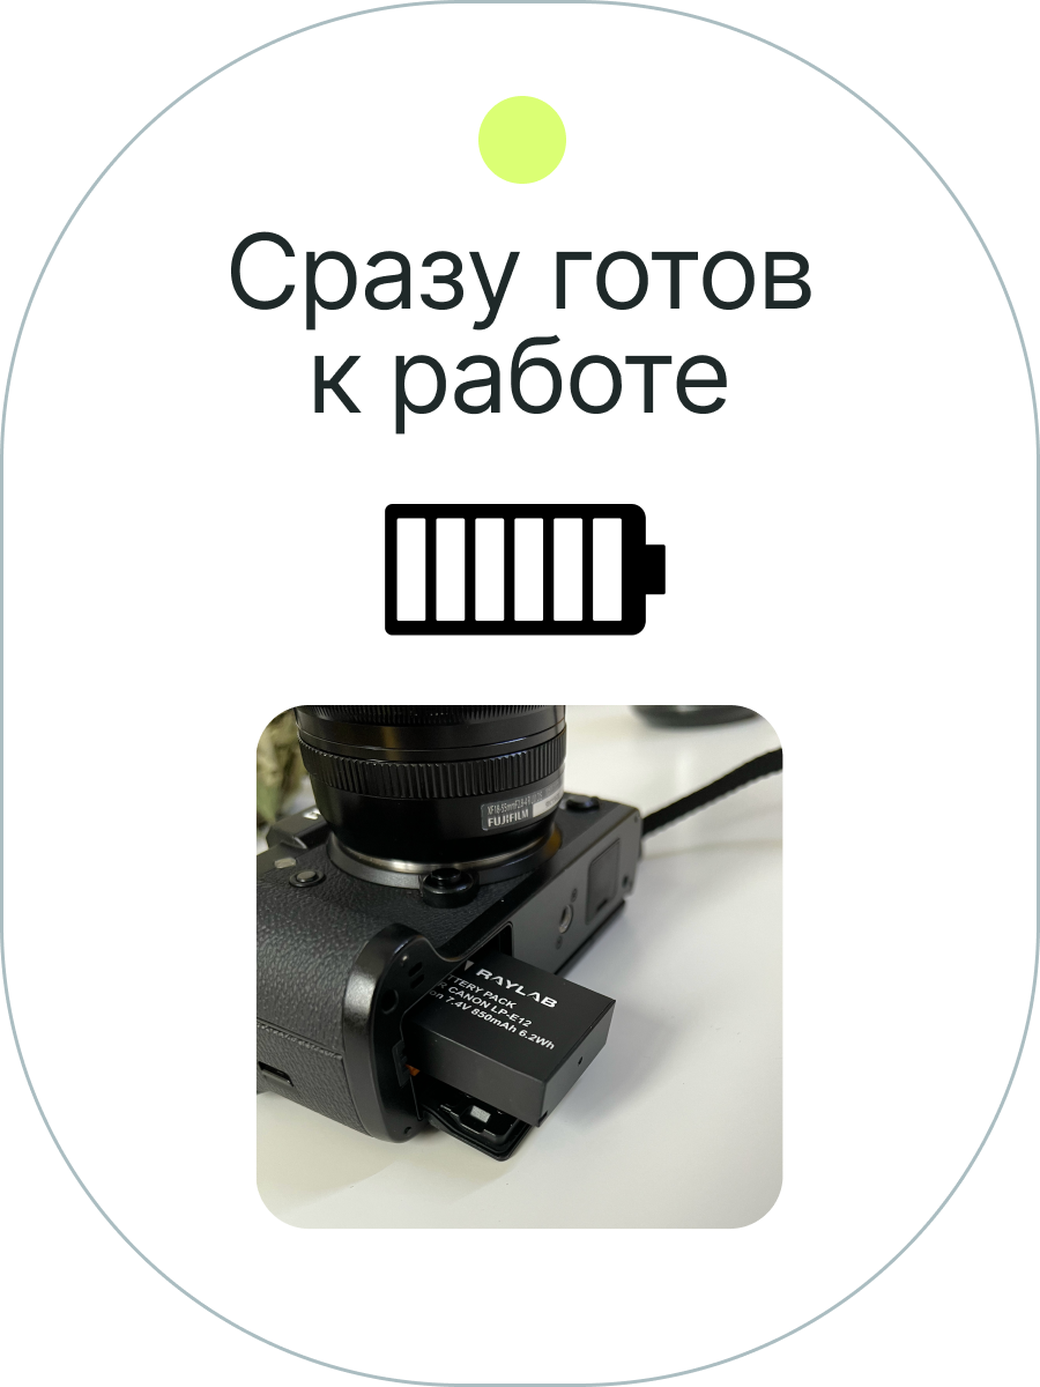 Аккумулятор Raylab RL-LPE12 850мАч (для EOS M, EOS 100D, EOSM2, EOS M100, M50, M10, M200, SX70, 200D,M10) фото